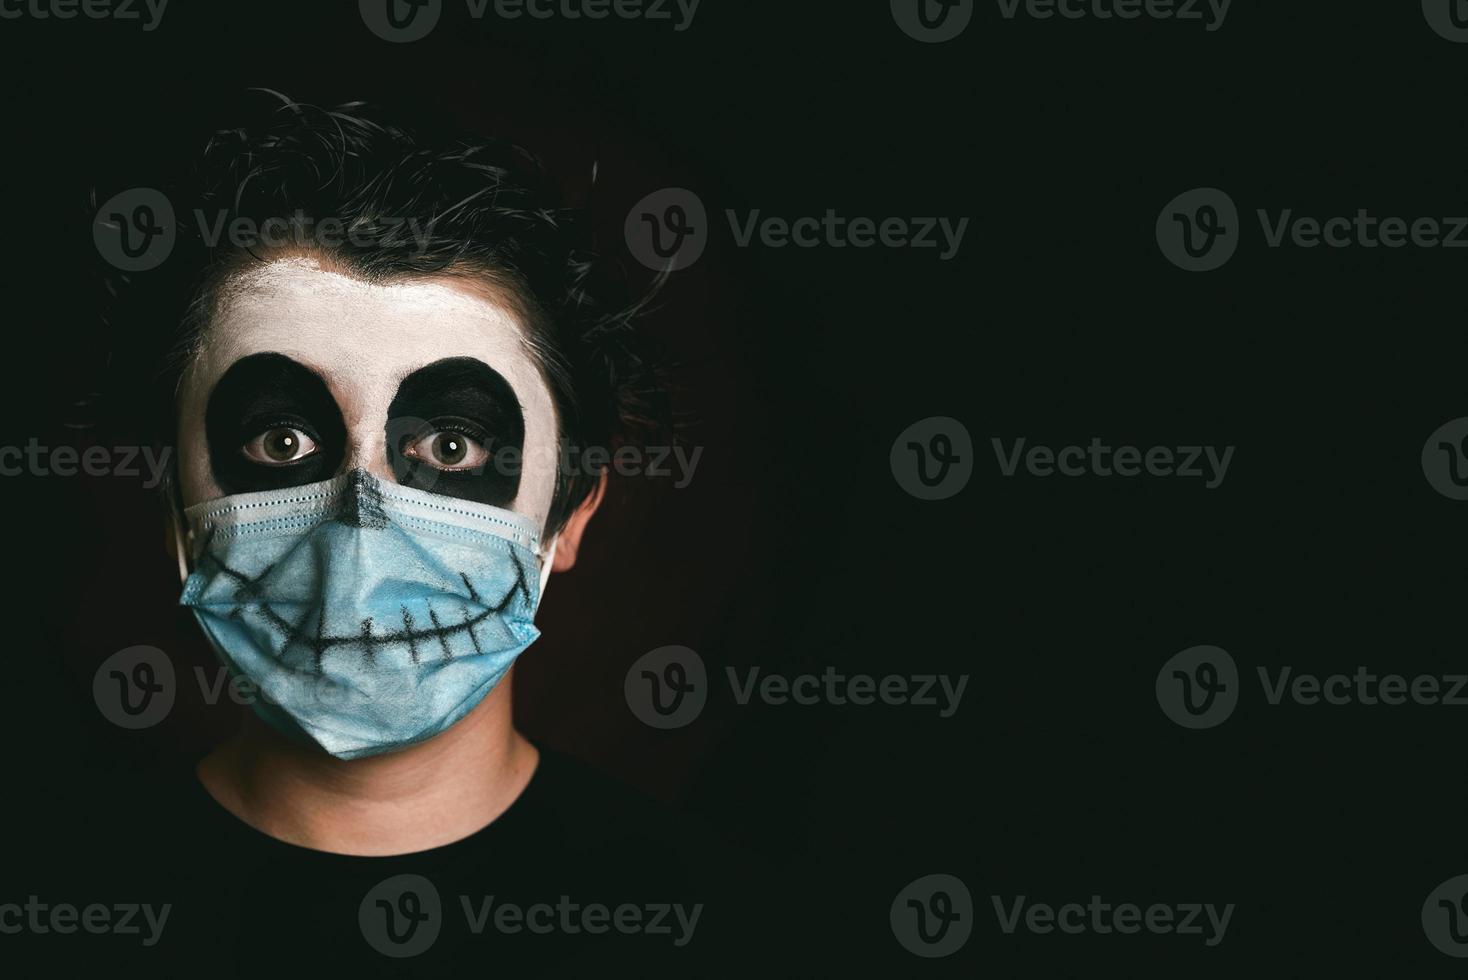 feliz halloween primer plano de niño con máscara médica en un disfraz de esqueleto foto